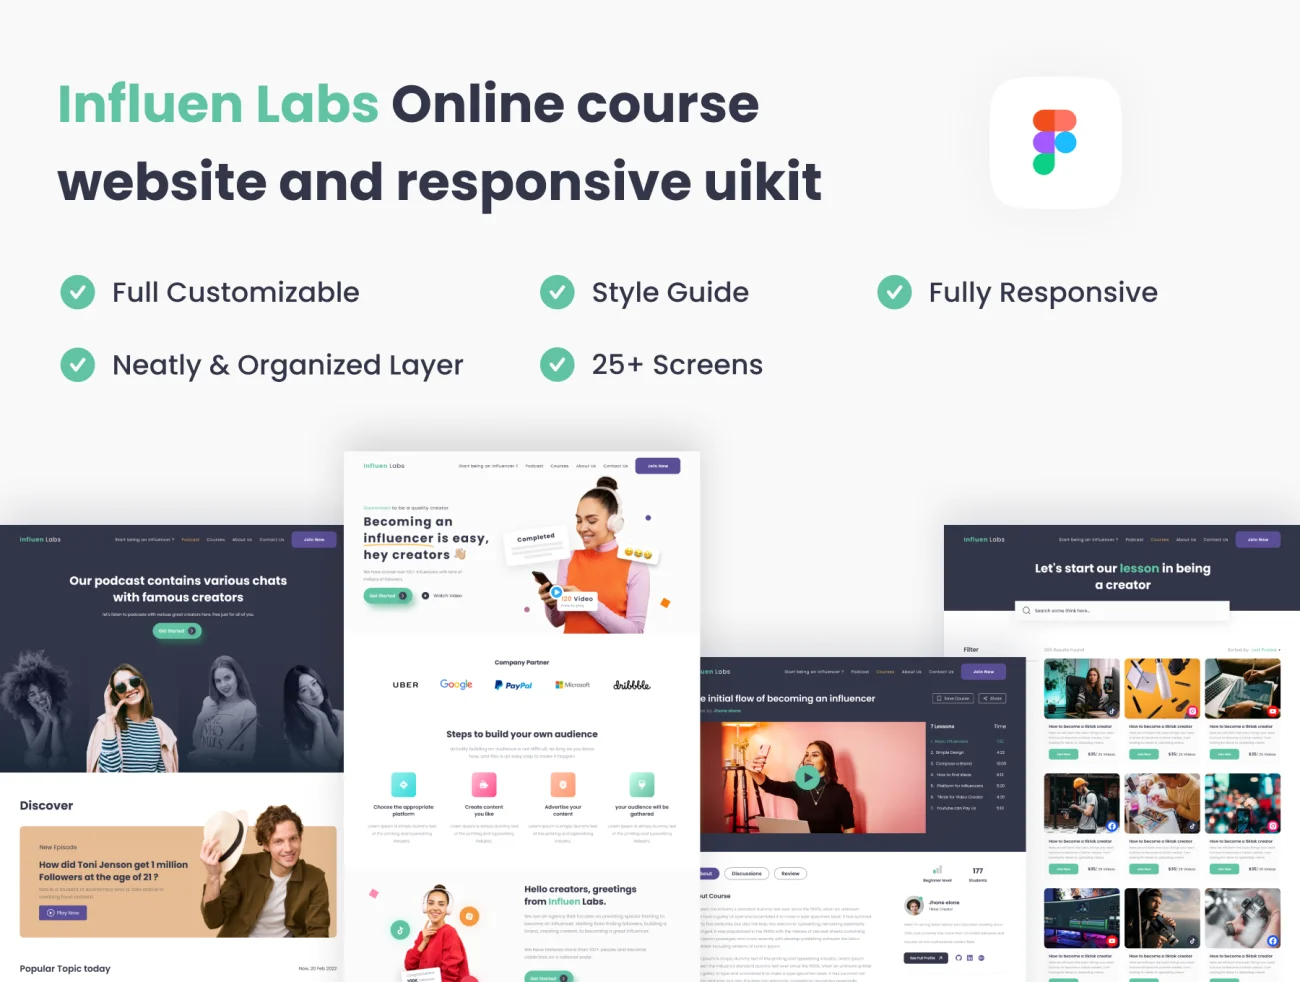 25屏在线教育动态响应网站设计模板 Influen Labs – Online Course for Inluencer website and responsive uikit .figma插图1